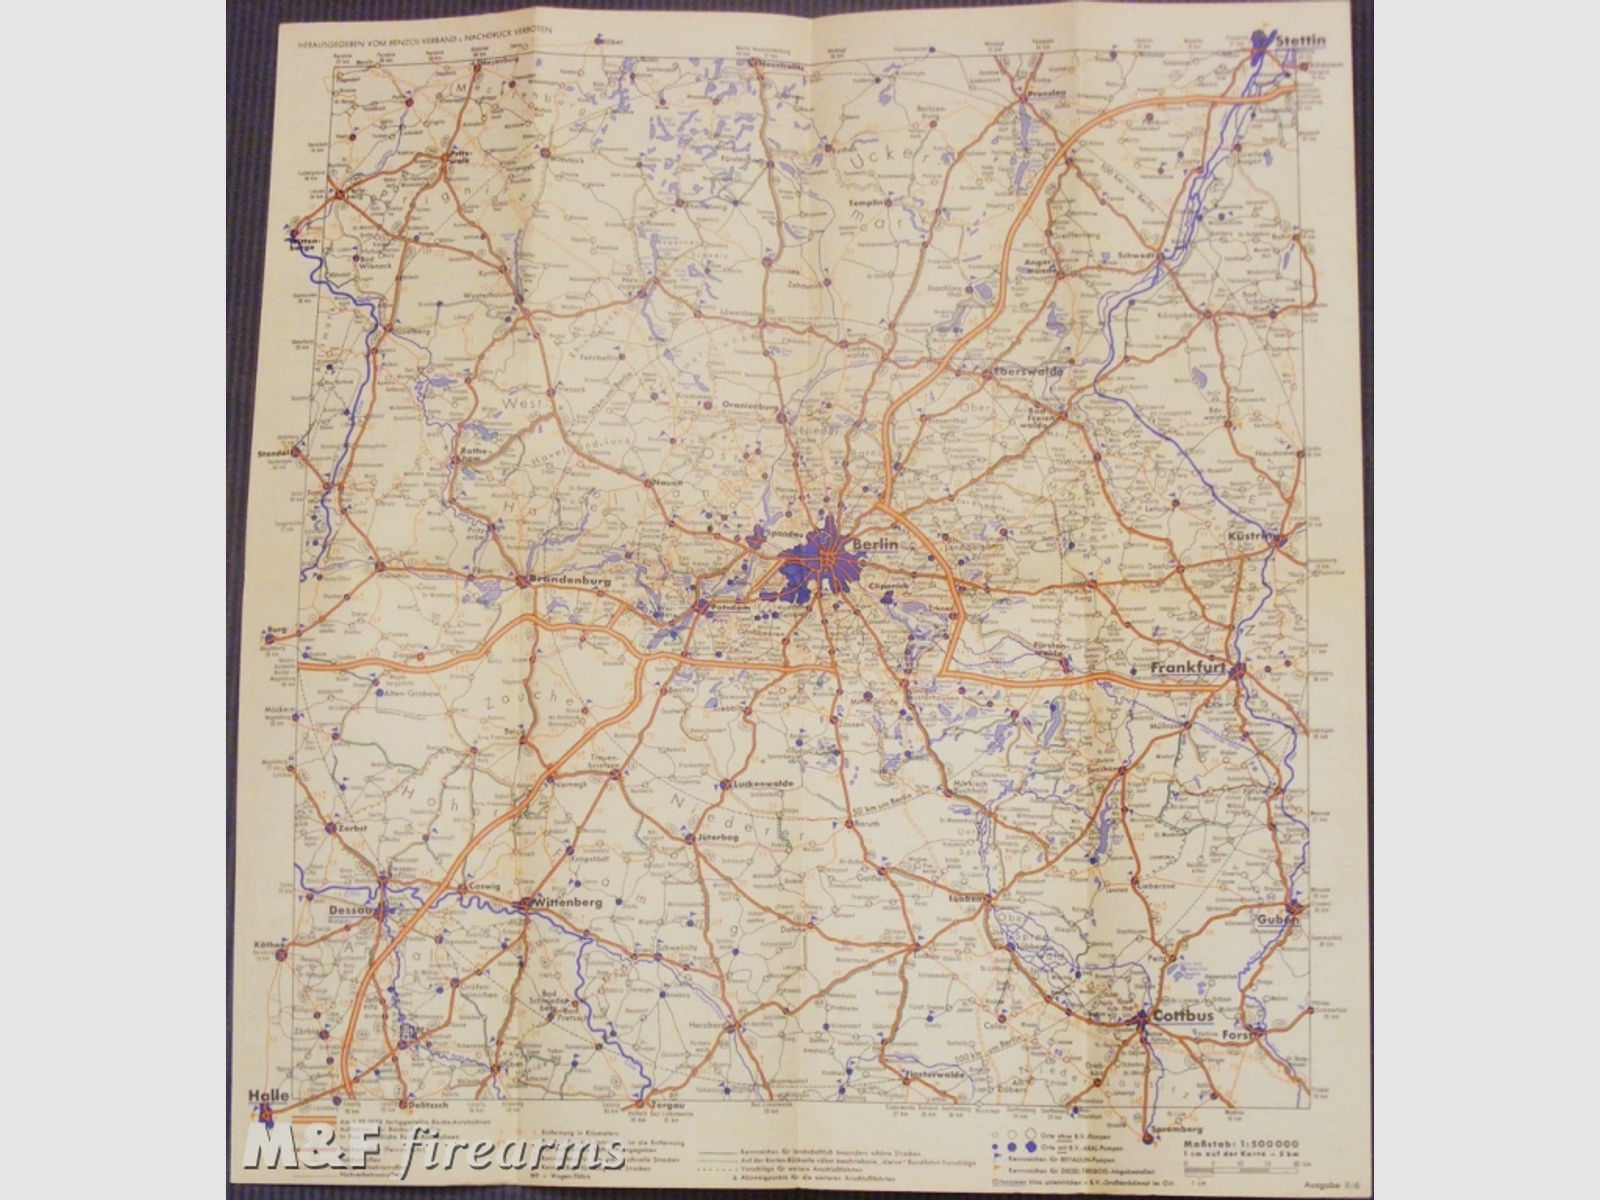 B.V. - Karte 14 - Aral - 100 km um Berlin um ca. 1937